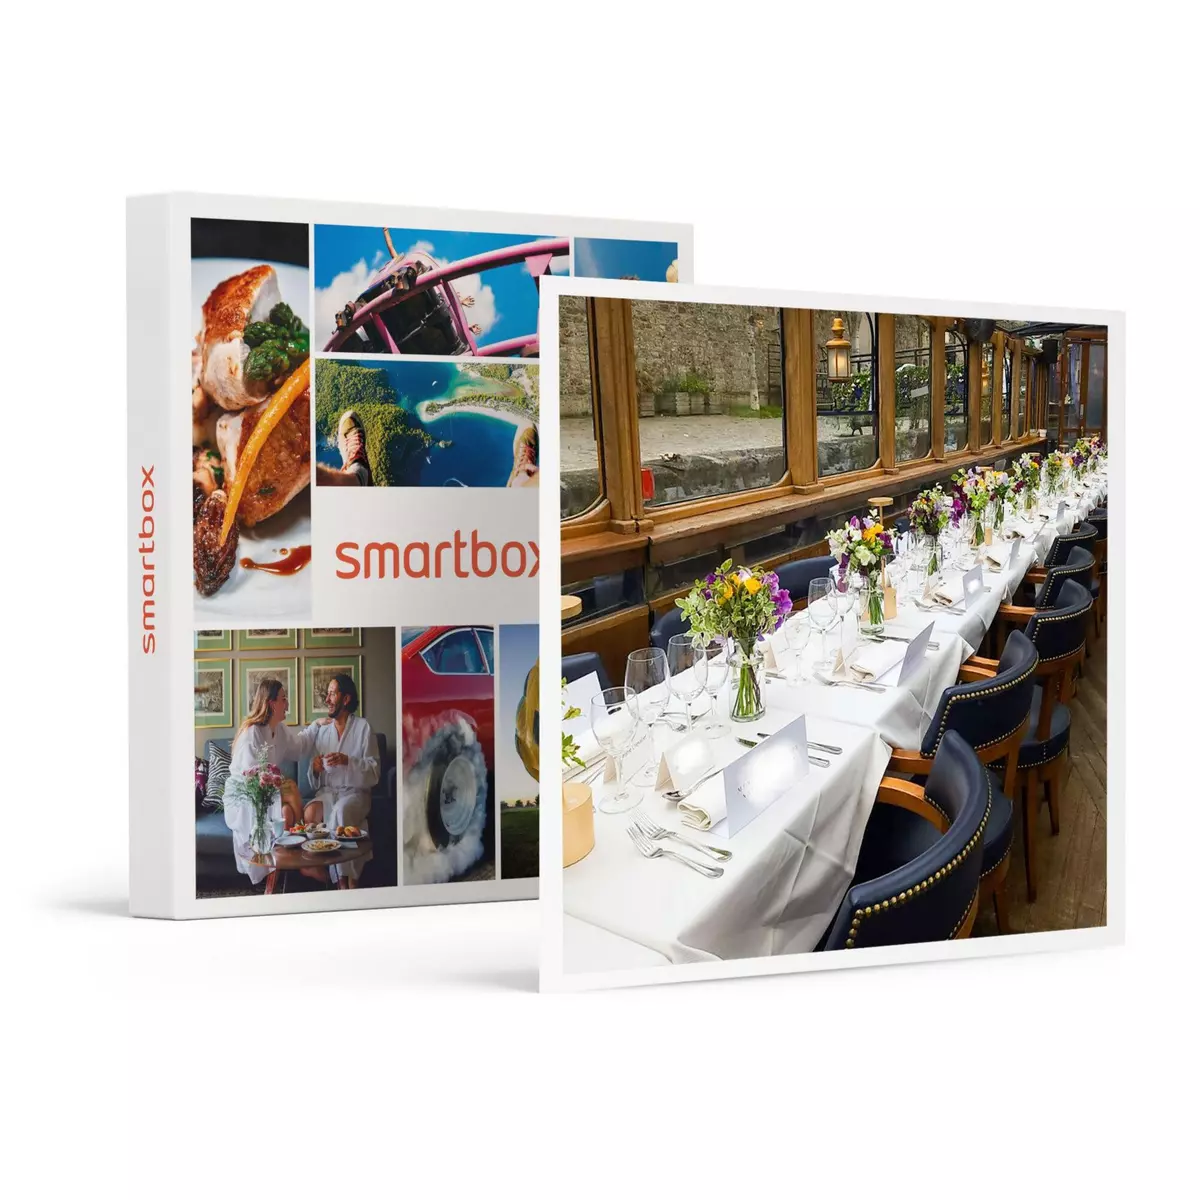 Smartbox Croisière de 2h sur la Seine avec dîner gastronomique, vin et champagne - Coffret Cadeau Gastronomie